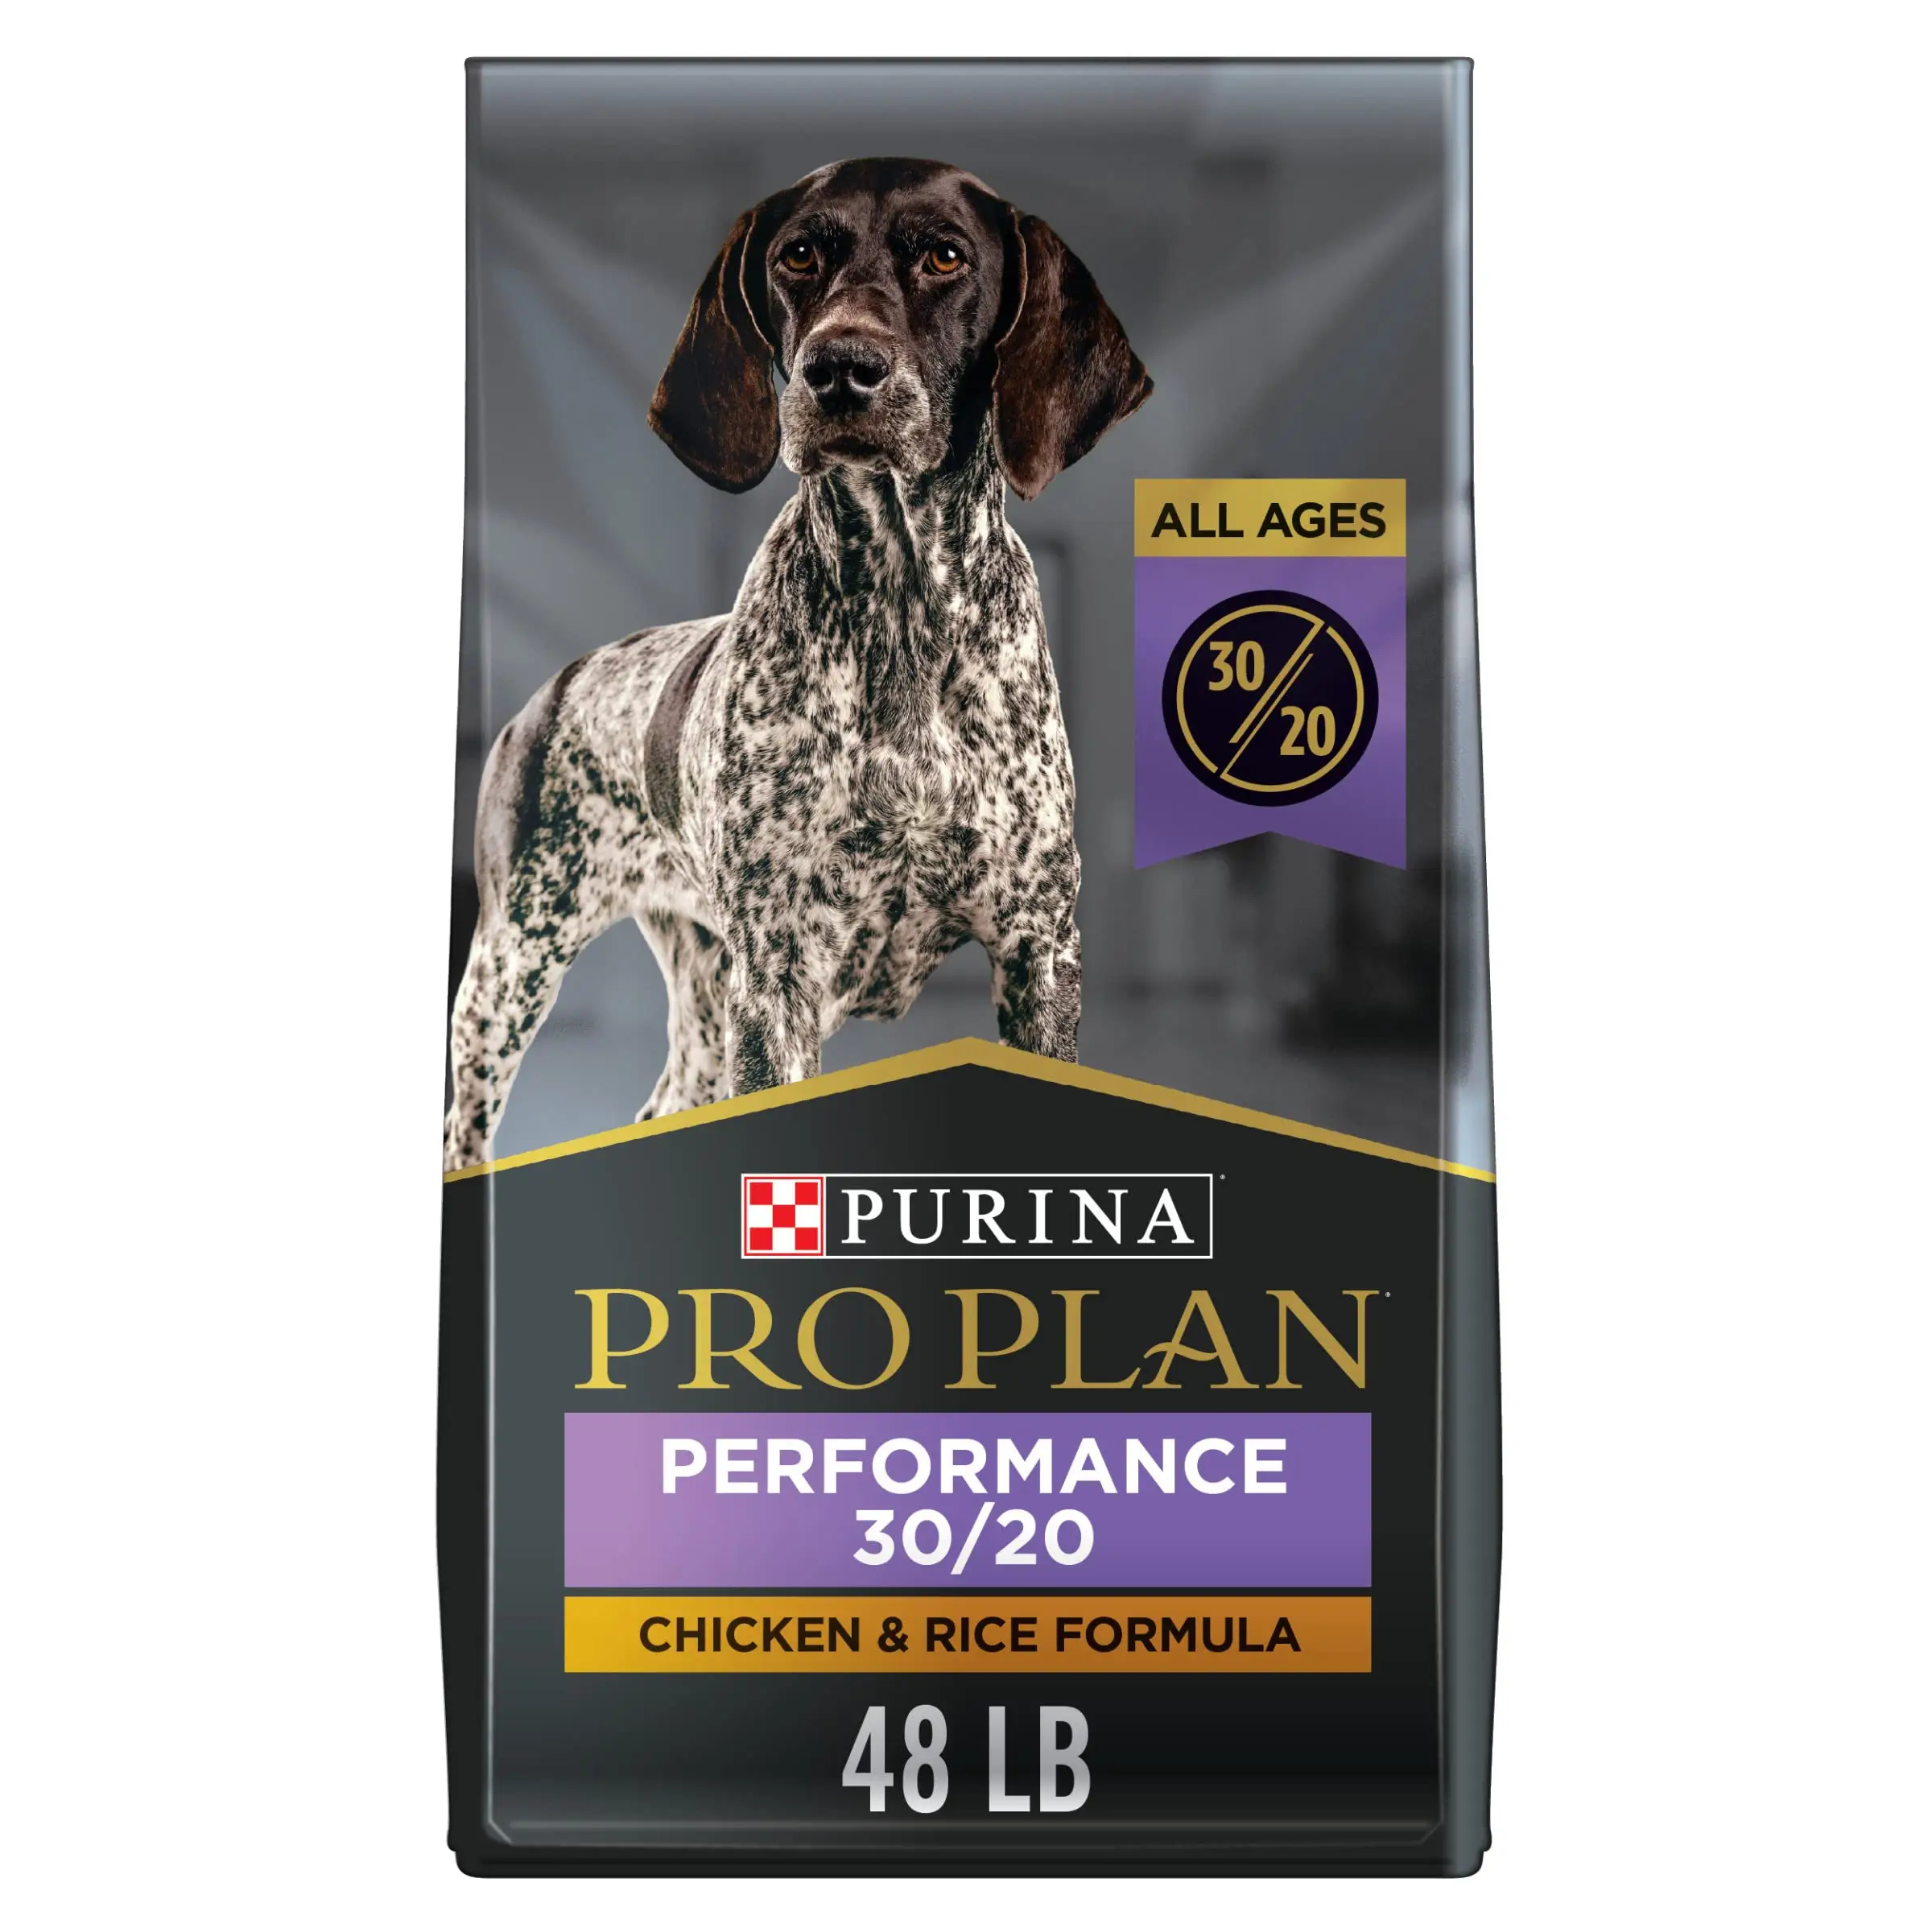 Purina Pro Plan de alta calidad, alta en calorías, alta proteína, comida seca para perros 30/20, fórmula de Pollo y Arroz